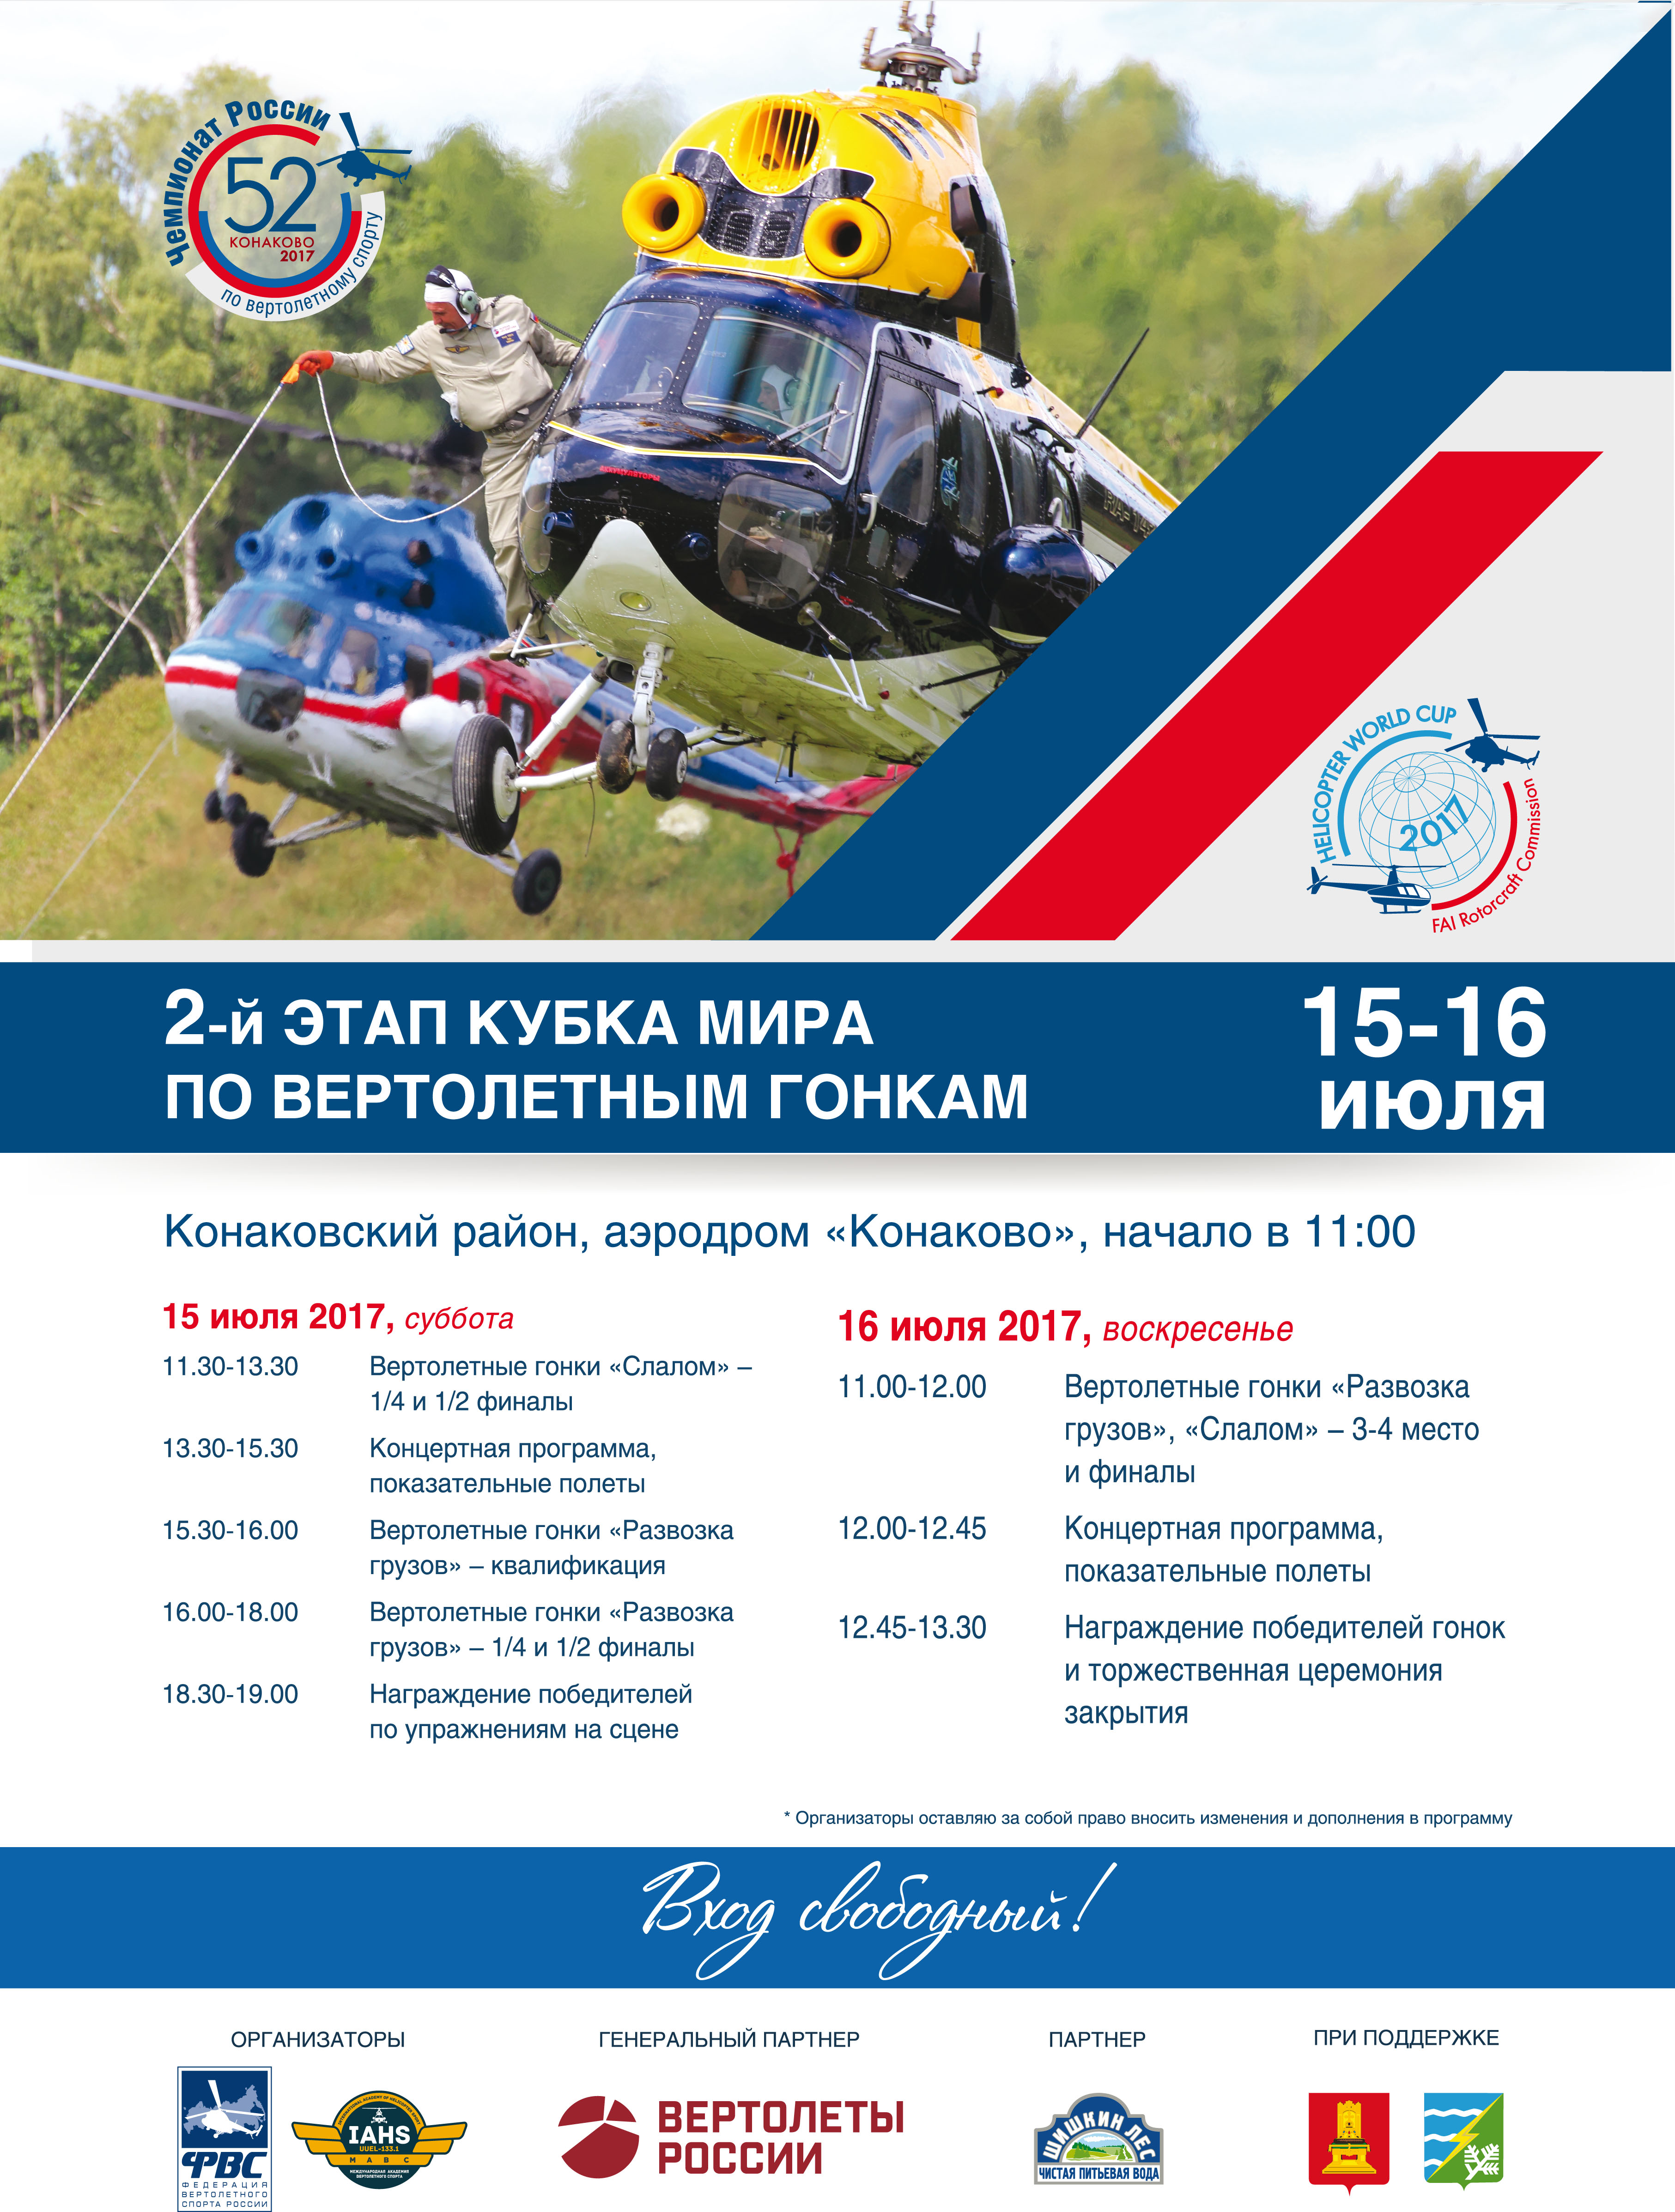 2-й этап кубка мира по вертолётным гонкам в Конаково 15-16 июля 2017 г D184d0b2d181_52d187d180_2017_297d185420_1